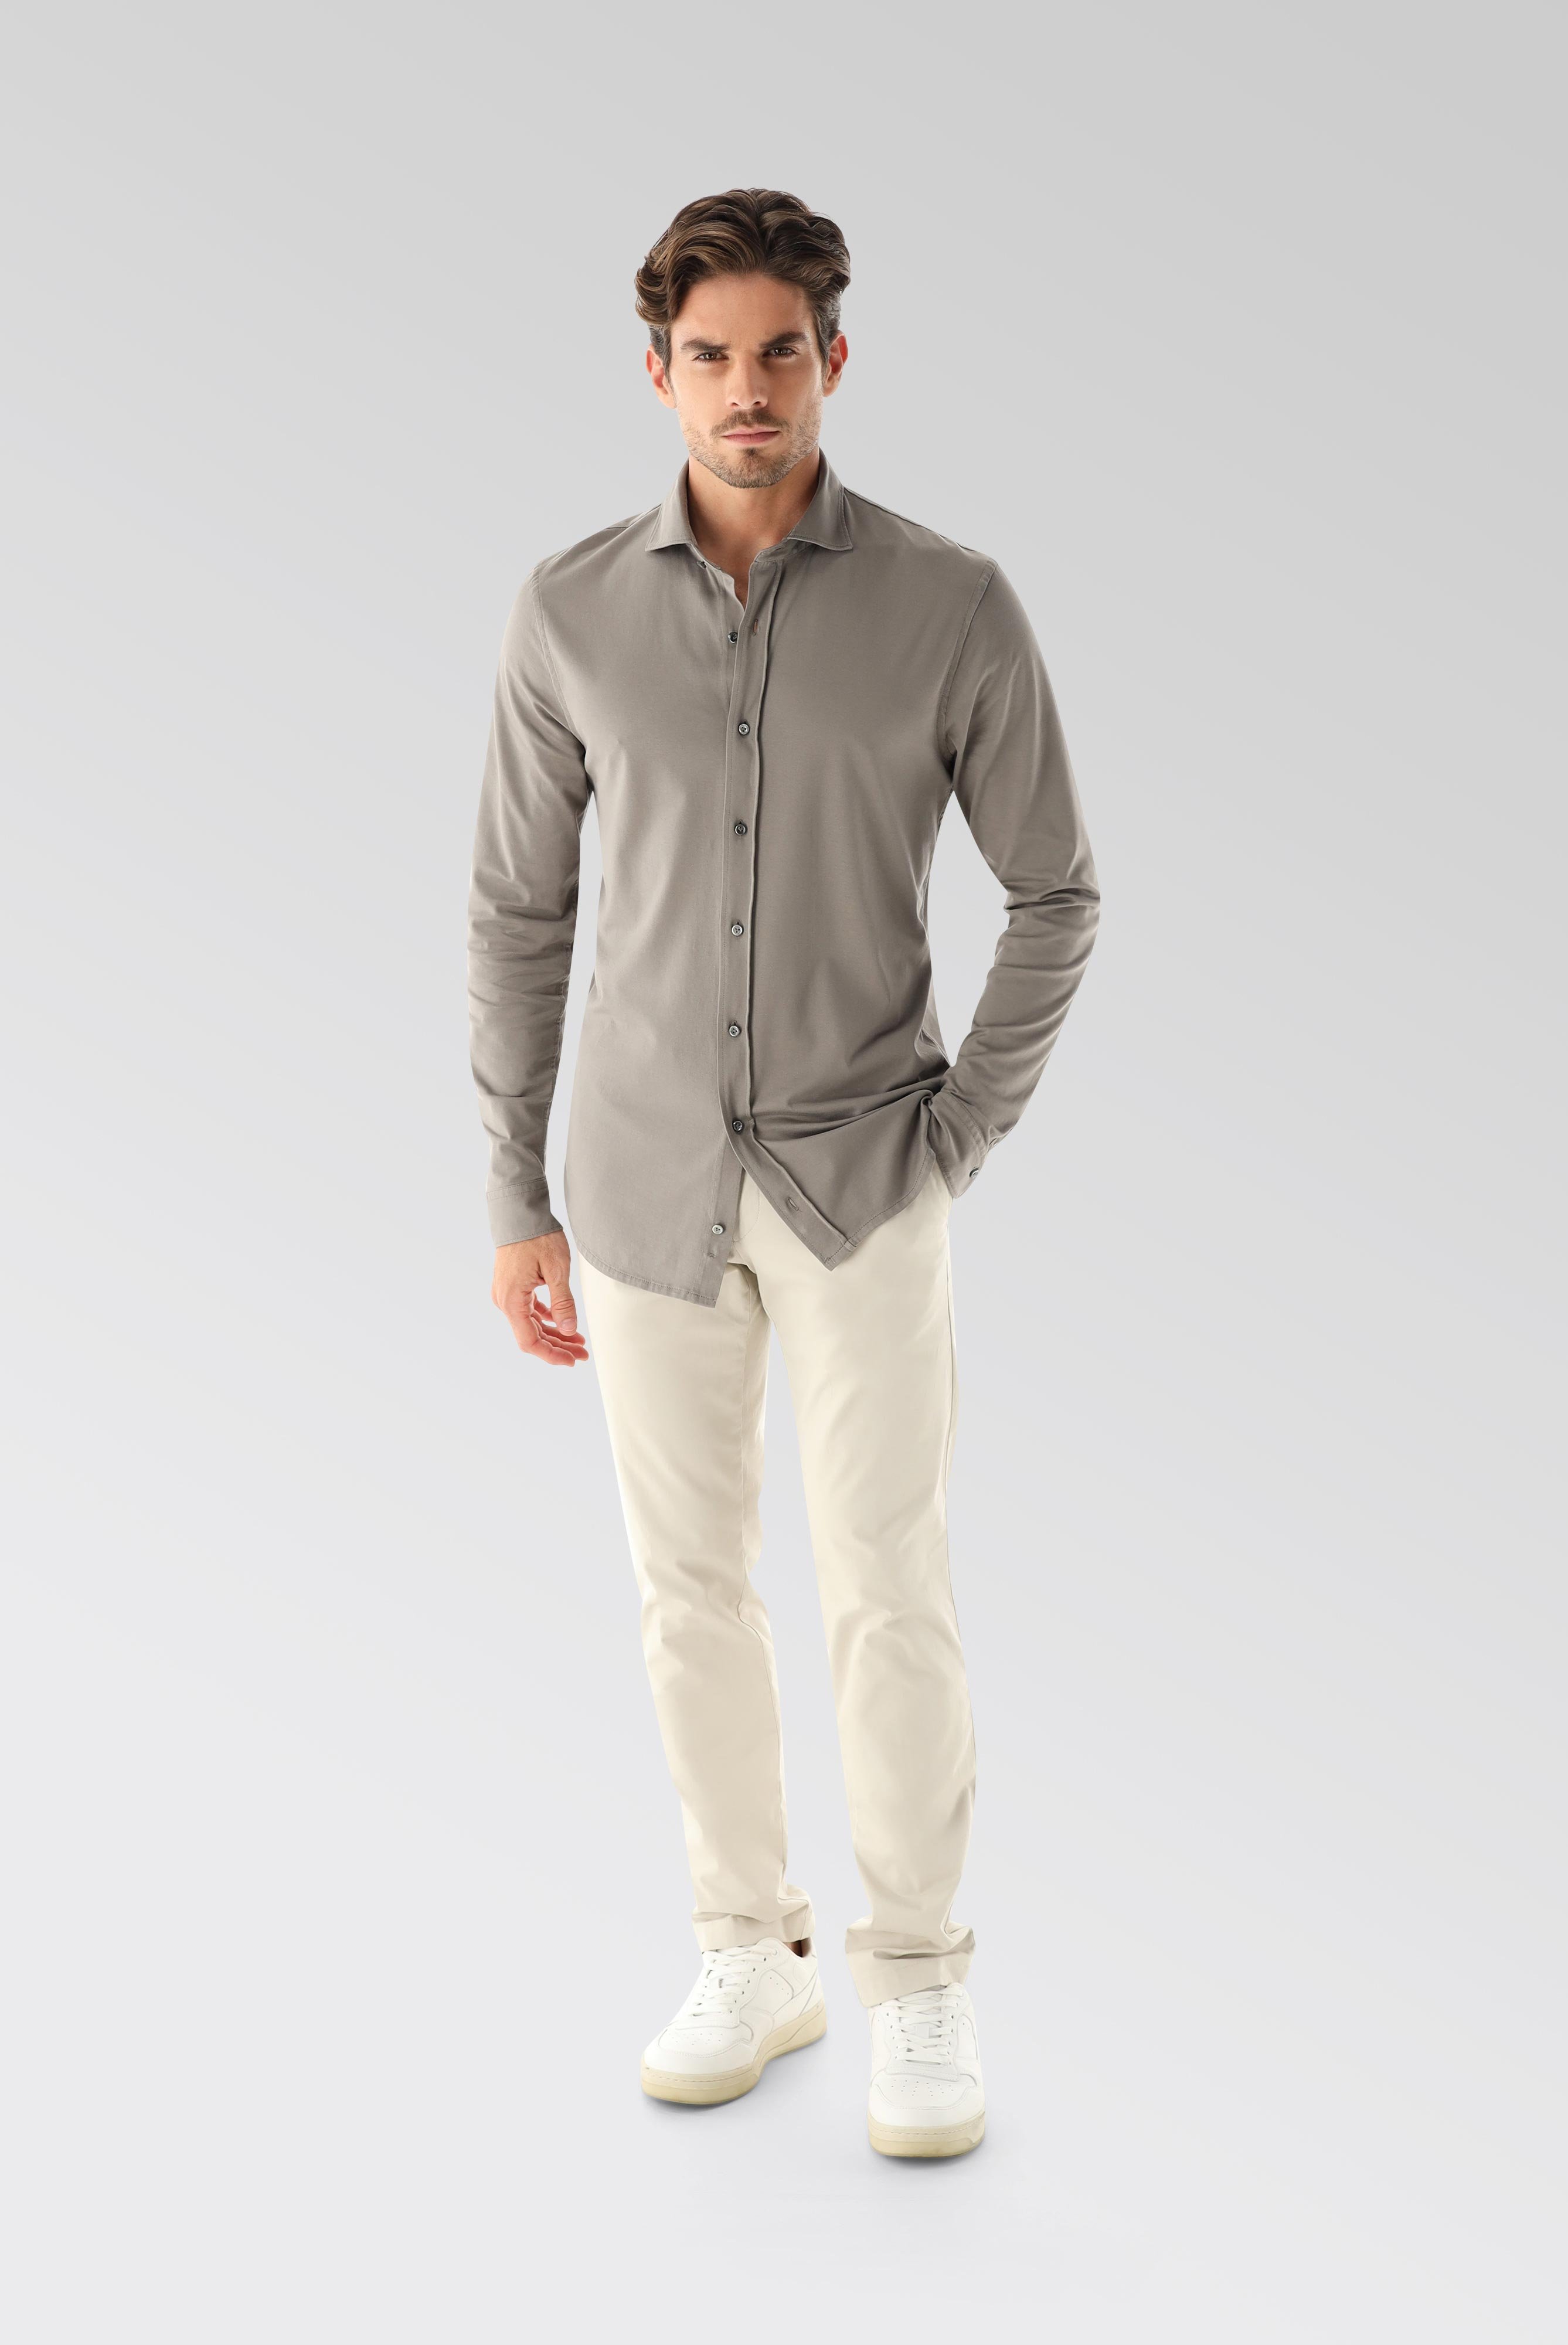 Jersey Hemden+Jersey Shirt Urban Look Slim Fit+20.1651.UC.Z20044.060.L